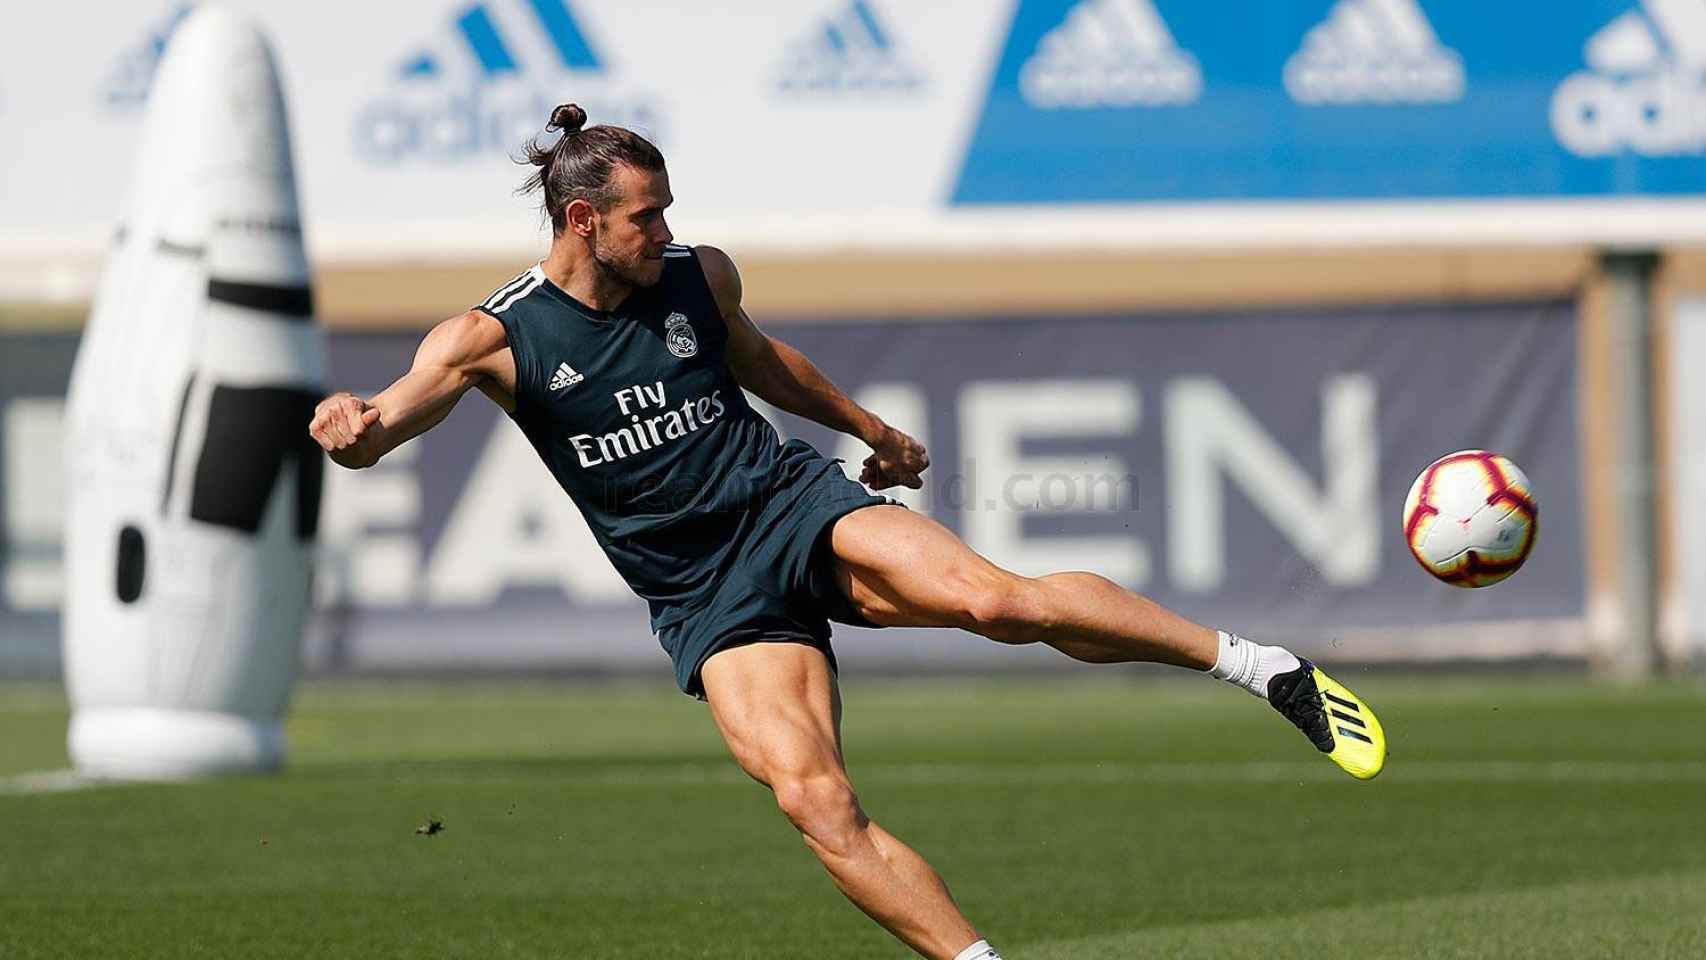 Bale golpea el balón durante el entrenamiento del Real Madrid